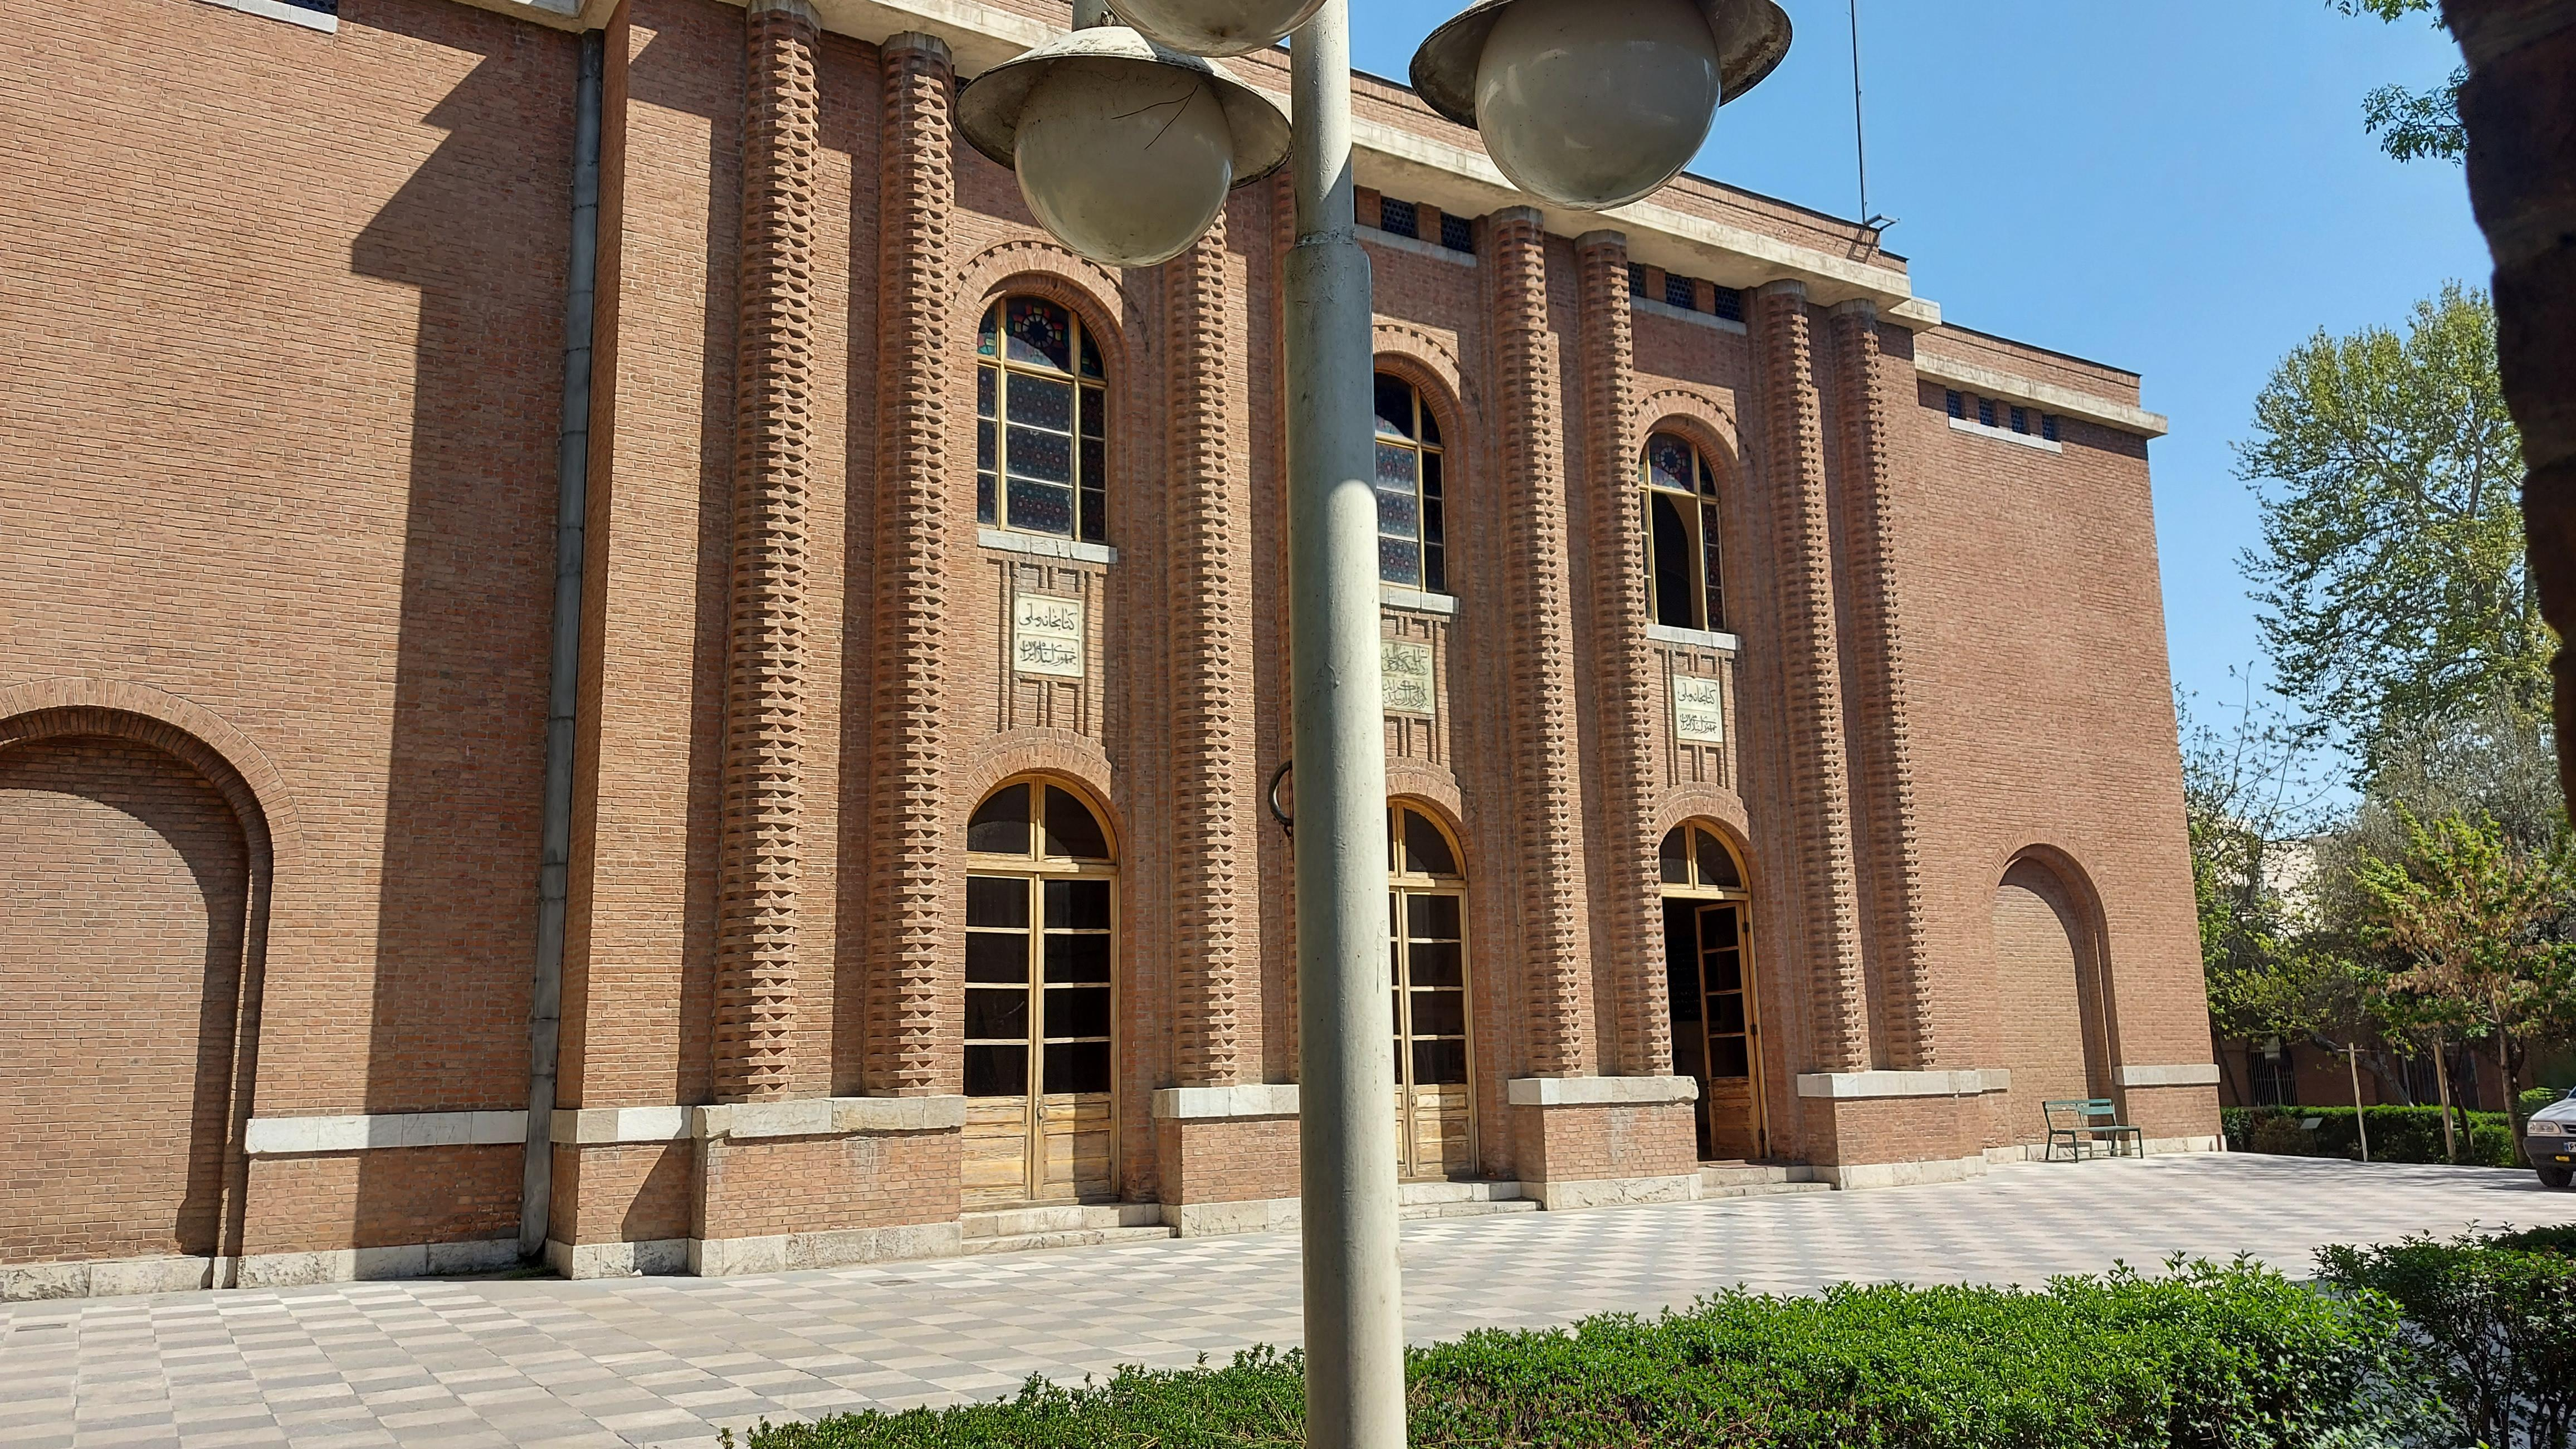 موزه علوم و فناوری ایران